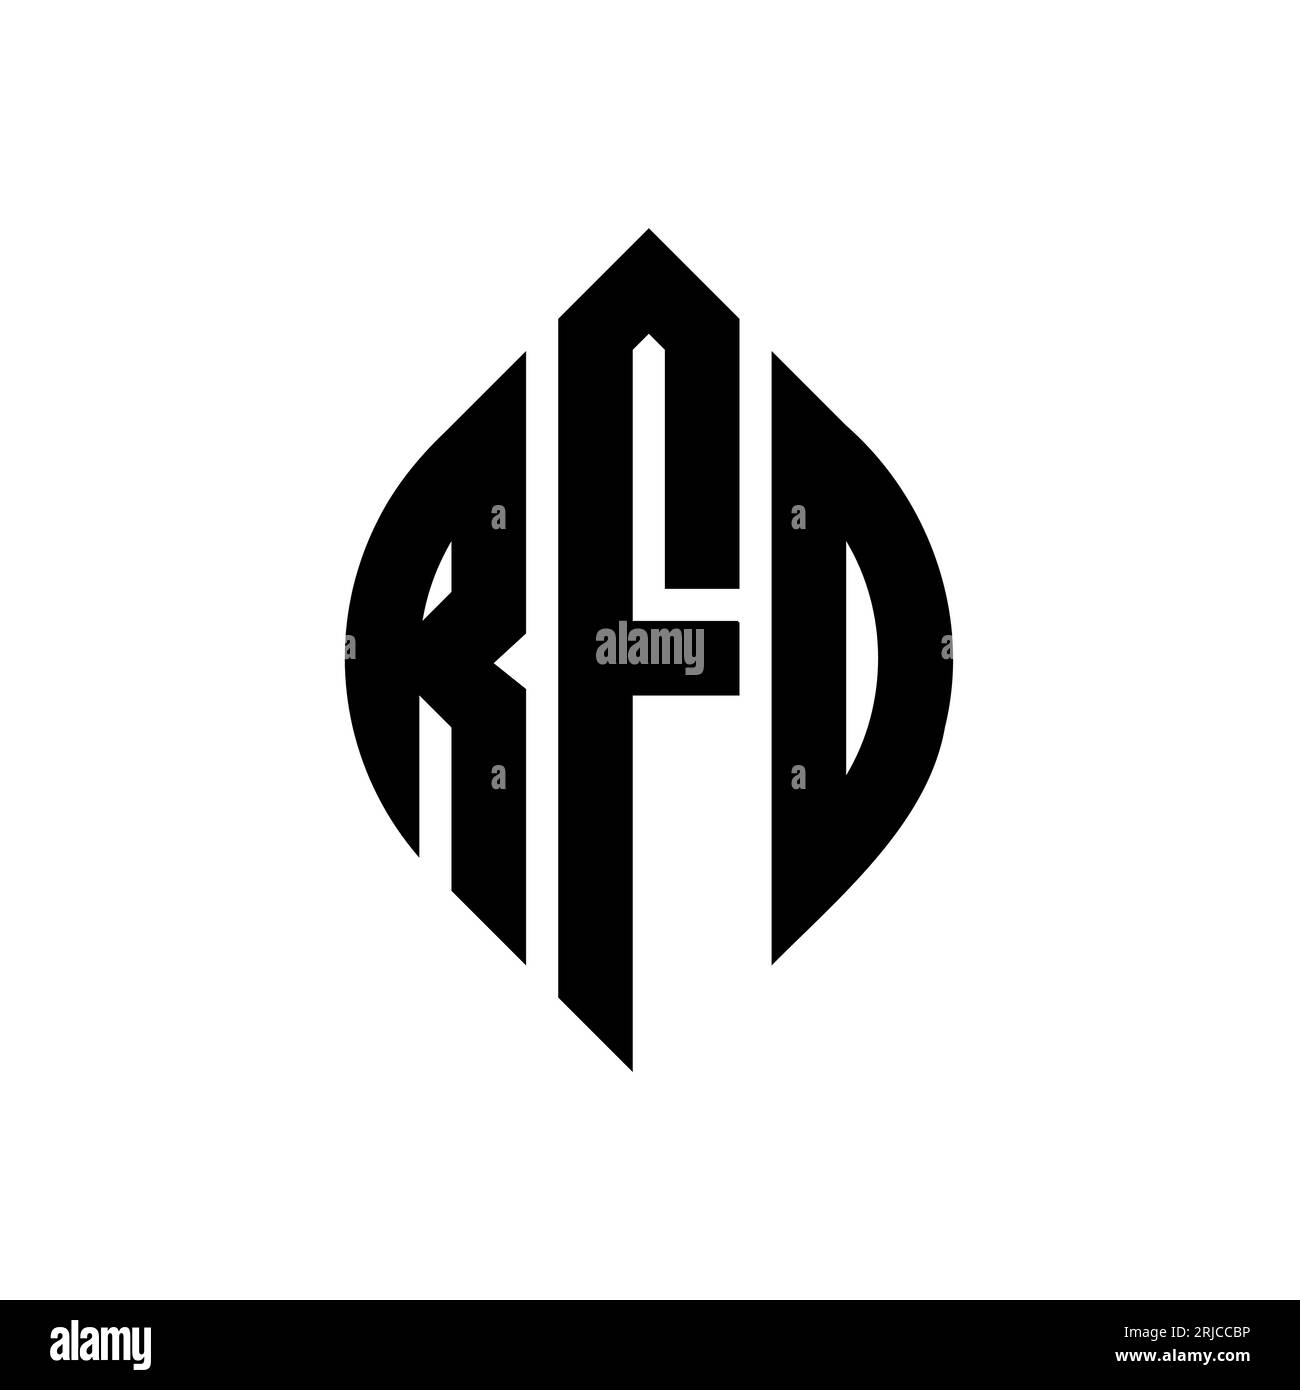 RFD-Logodesign mit kreisförmigem Buchstaben und Ellipsenform. RFD-Ellipsenbuchstaben im typografischen Stil. Die drei Initialen bilden ein kreisförmiges Logo. RFD-CI Stock Vektor